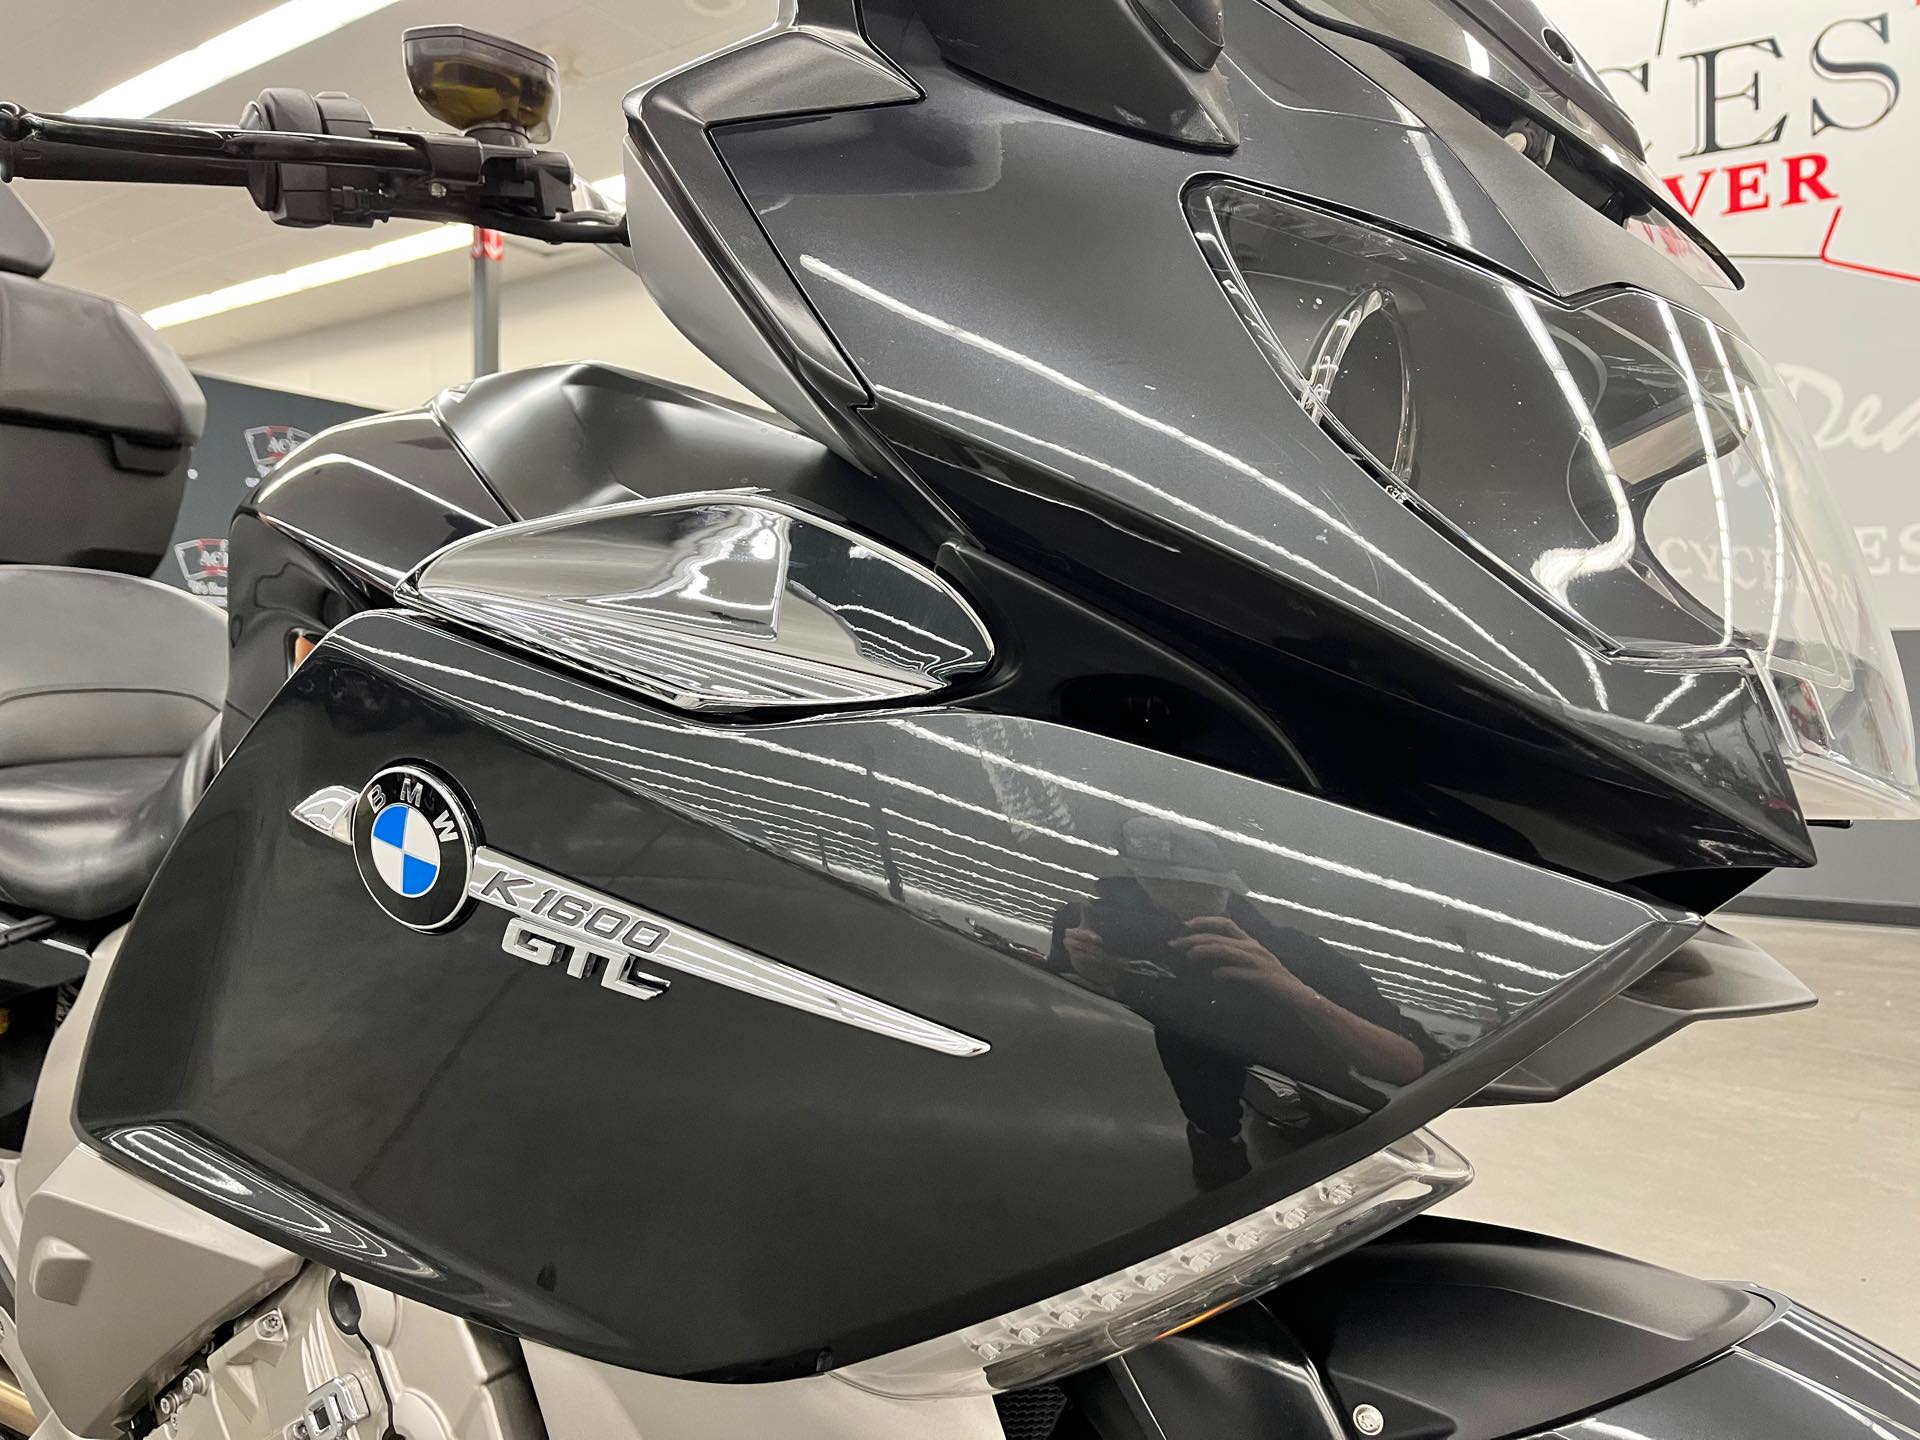 2013 BMW K 1600 GTL at Aces Motorcycles - Denver